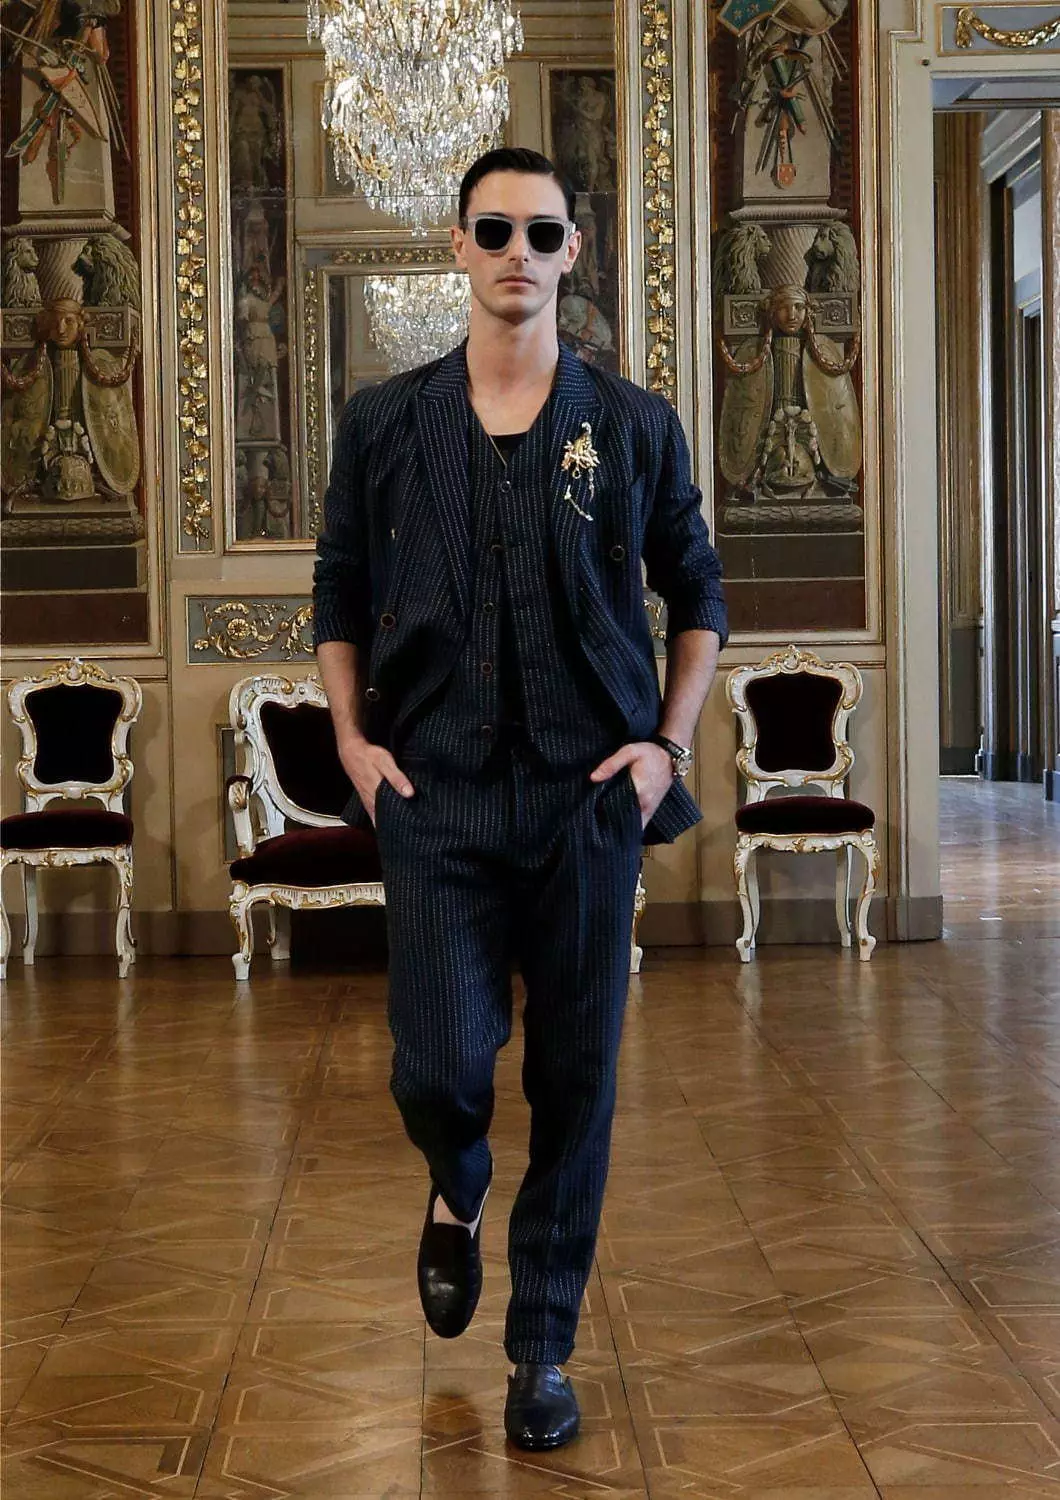 Dolce & Gabbana Alta Sartoria 男装系列 2020 年 7 月 53602_17